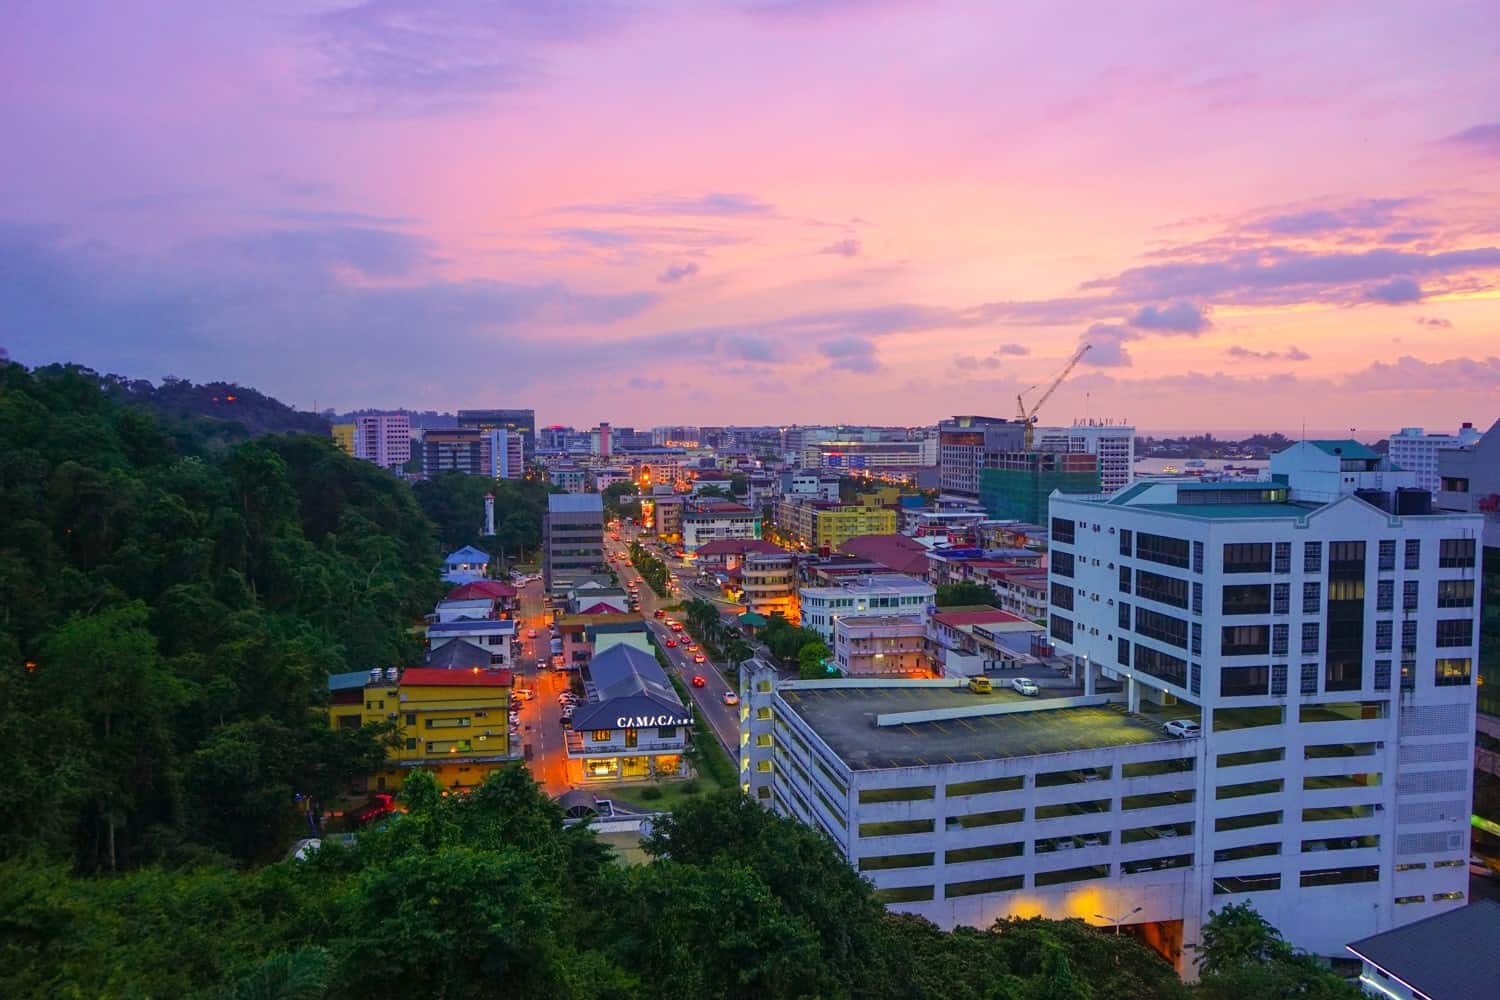 Sunset in Kota Kinabalu